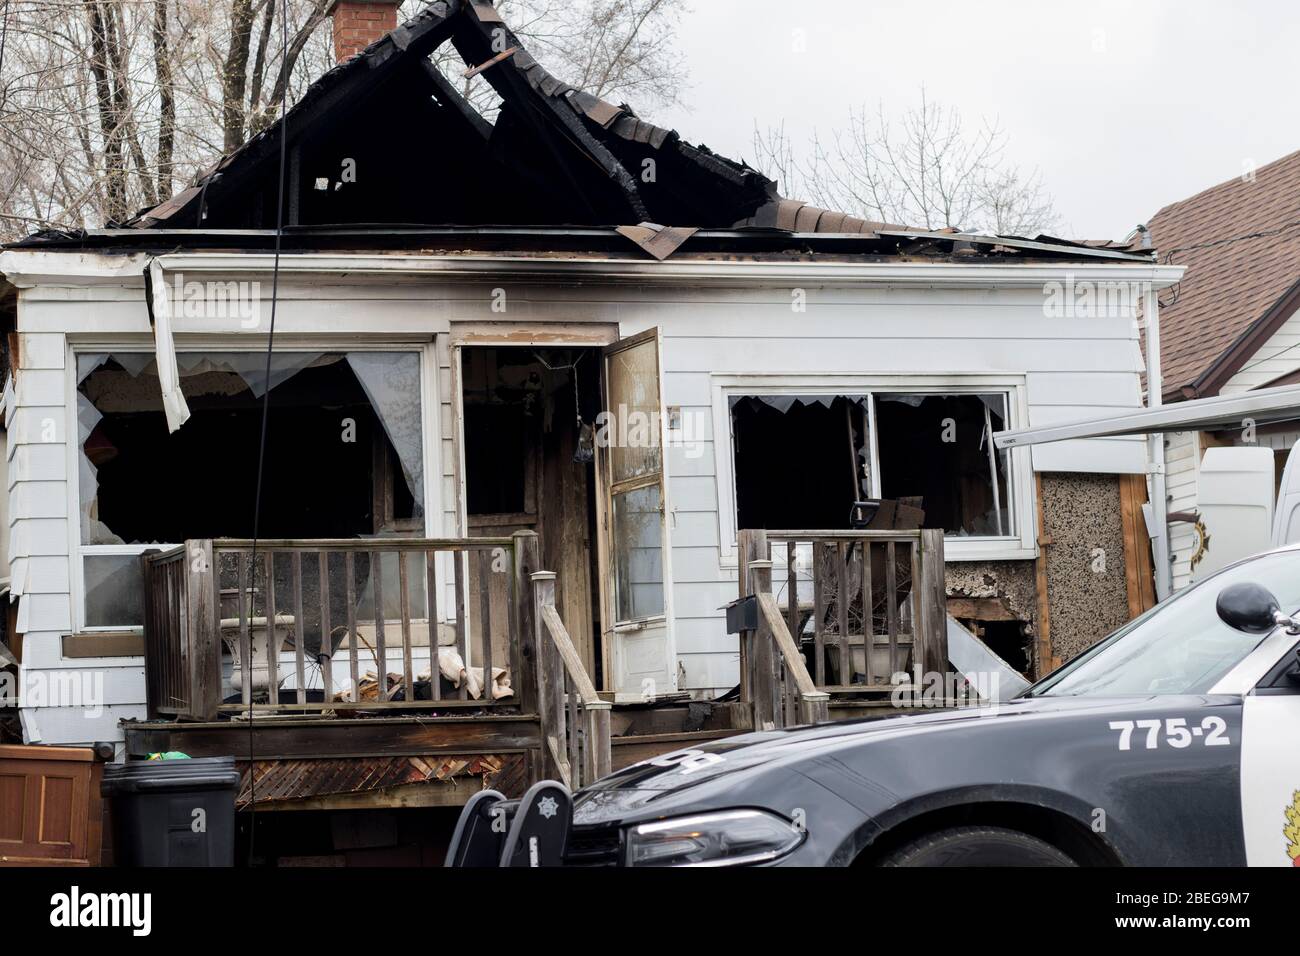 Ontario Kanada April 2020: Haus durch Feuer zerstört, was zu einem Tod führte. Polizei und Feuermarschall vor Ort untersuchen Hausbrand. Stockfoto